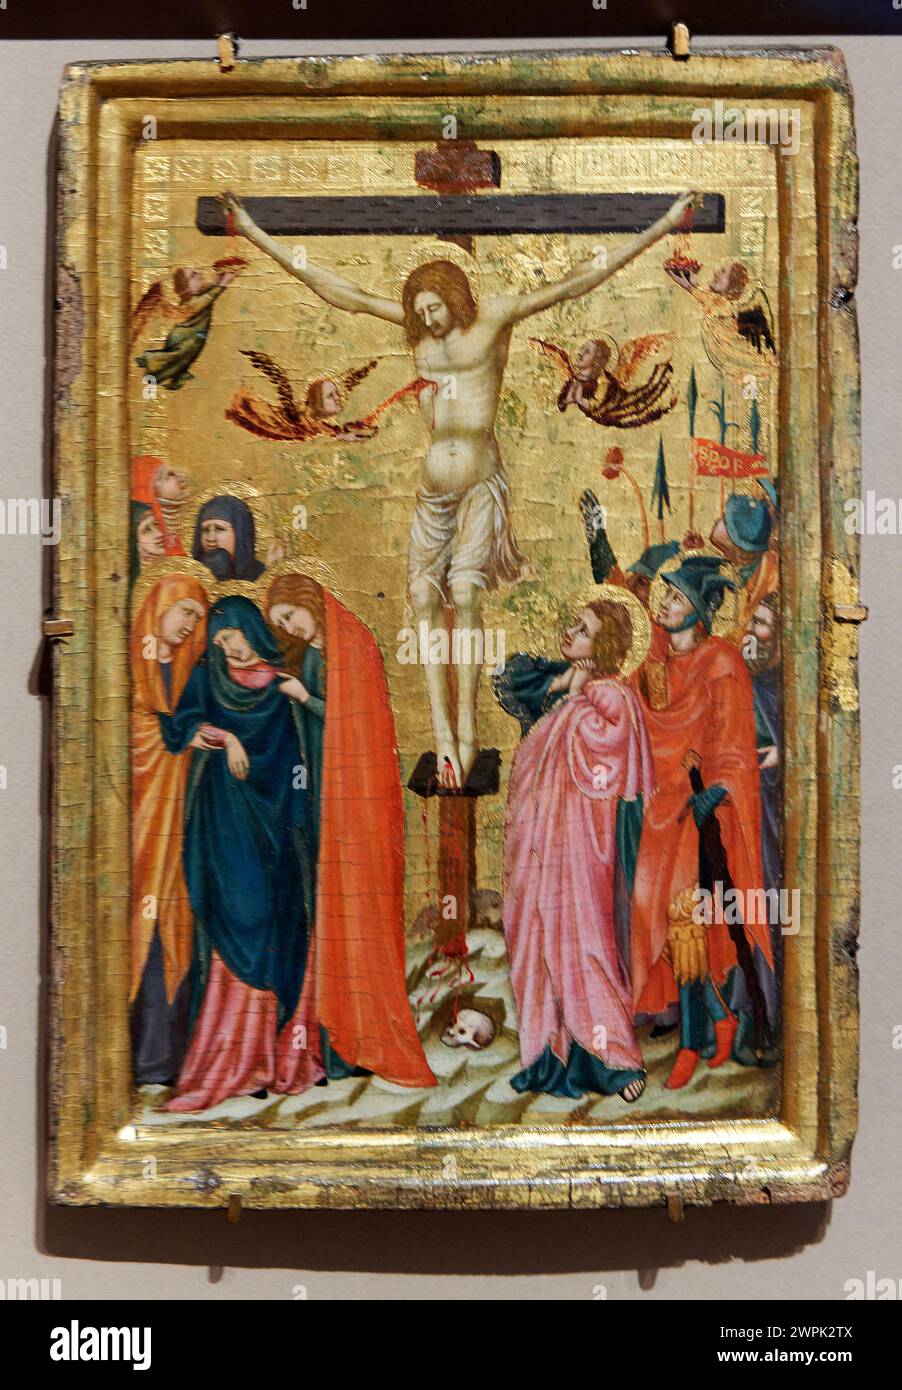 Maestro de la Sala Capitular de Pomposa (Activo en el primer cuarto del siglo XIV), The Crucifixion, Hacia 1320, Thyssen Bornemisza Museum, Madrid, Sp Stock Photo